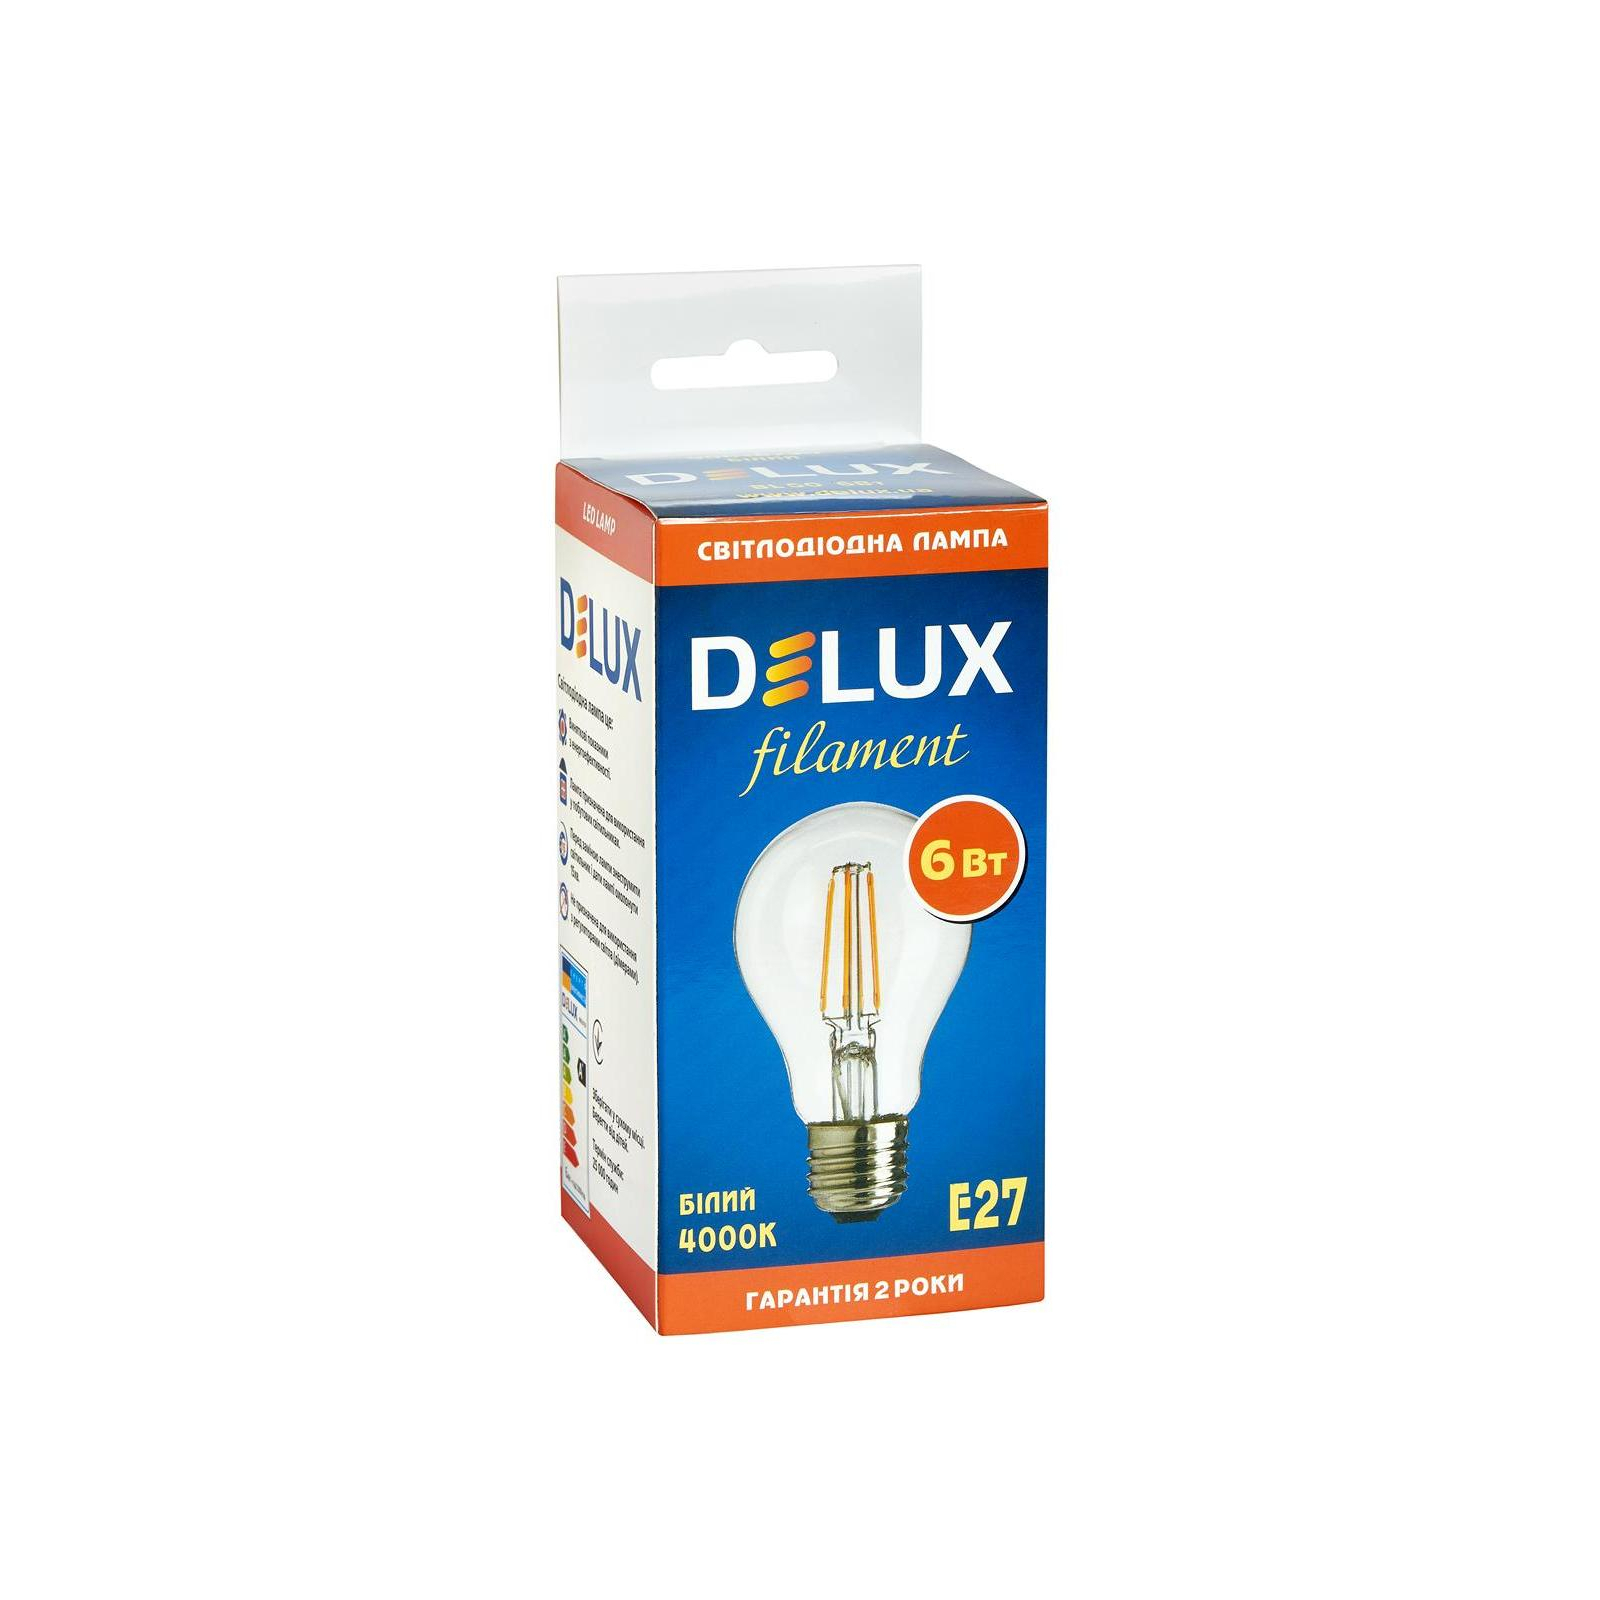 Лампочка Delux BL60 6Вт 4000K 220В E27 filament (90016730) зображення 2